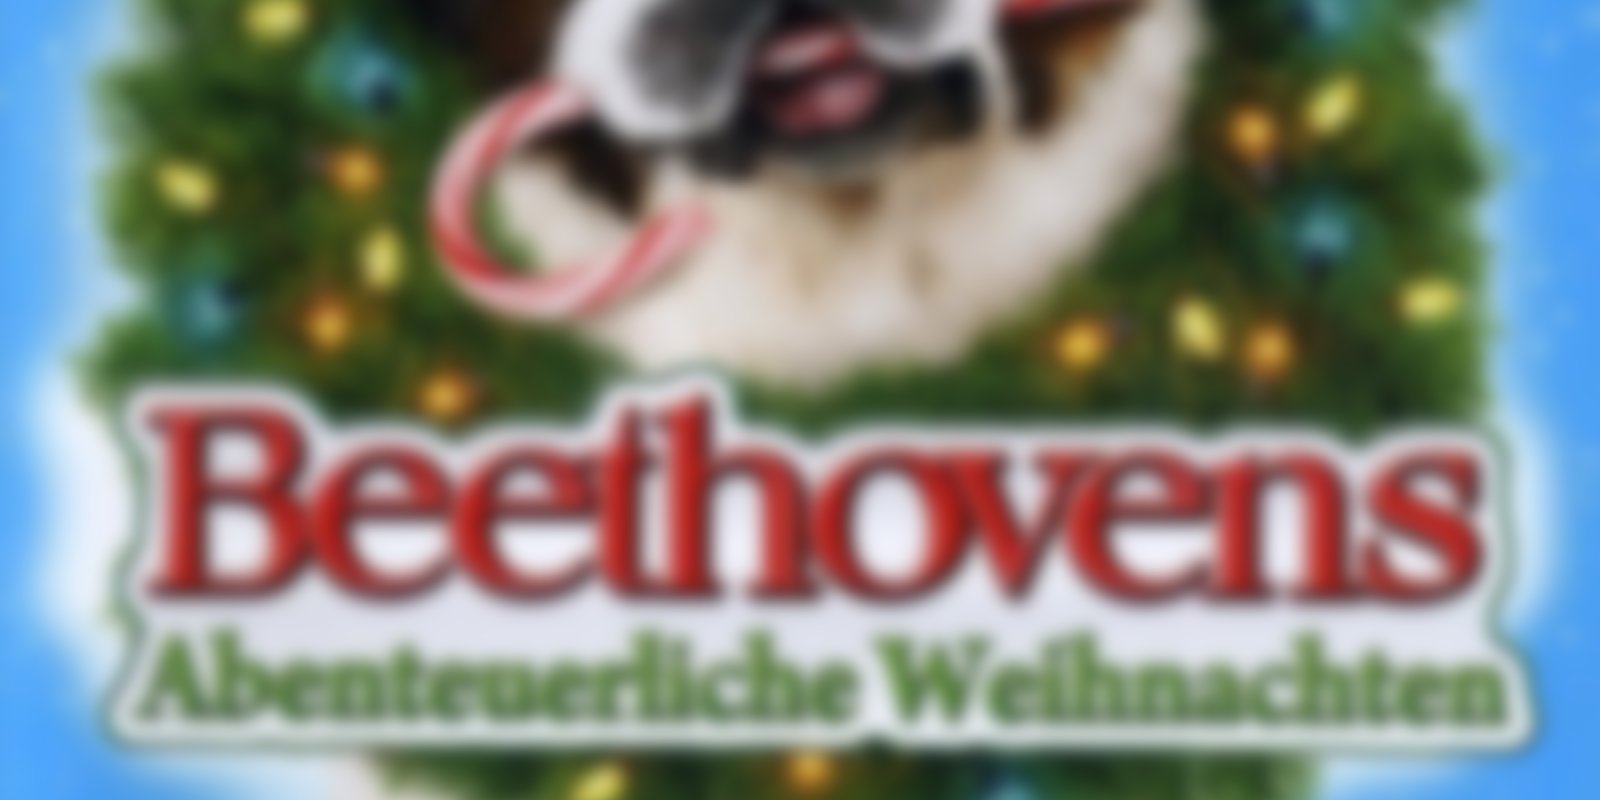 Beethoven 7 - Beethovens abenteuerliche Weihnachten